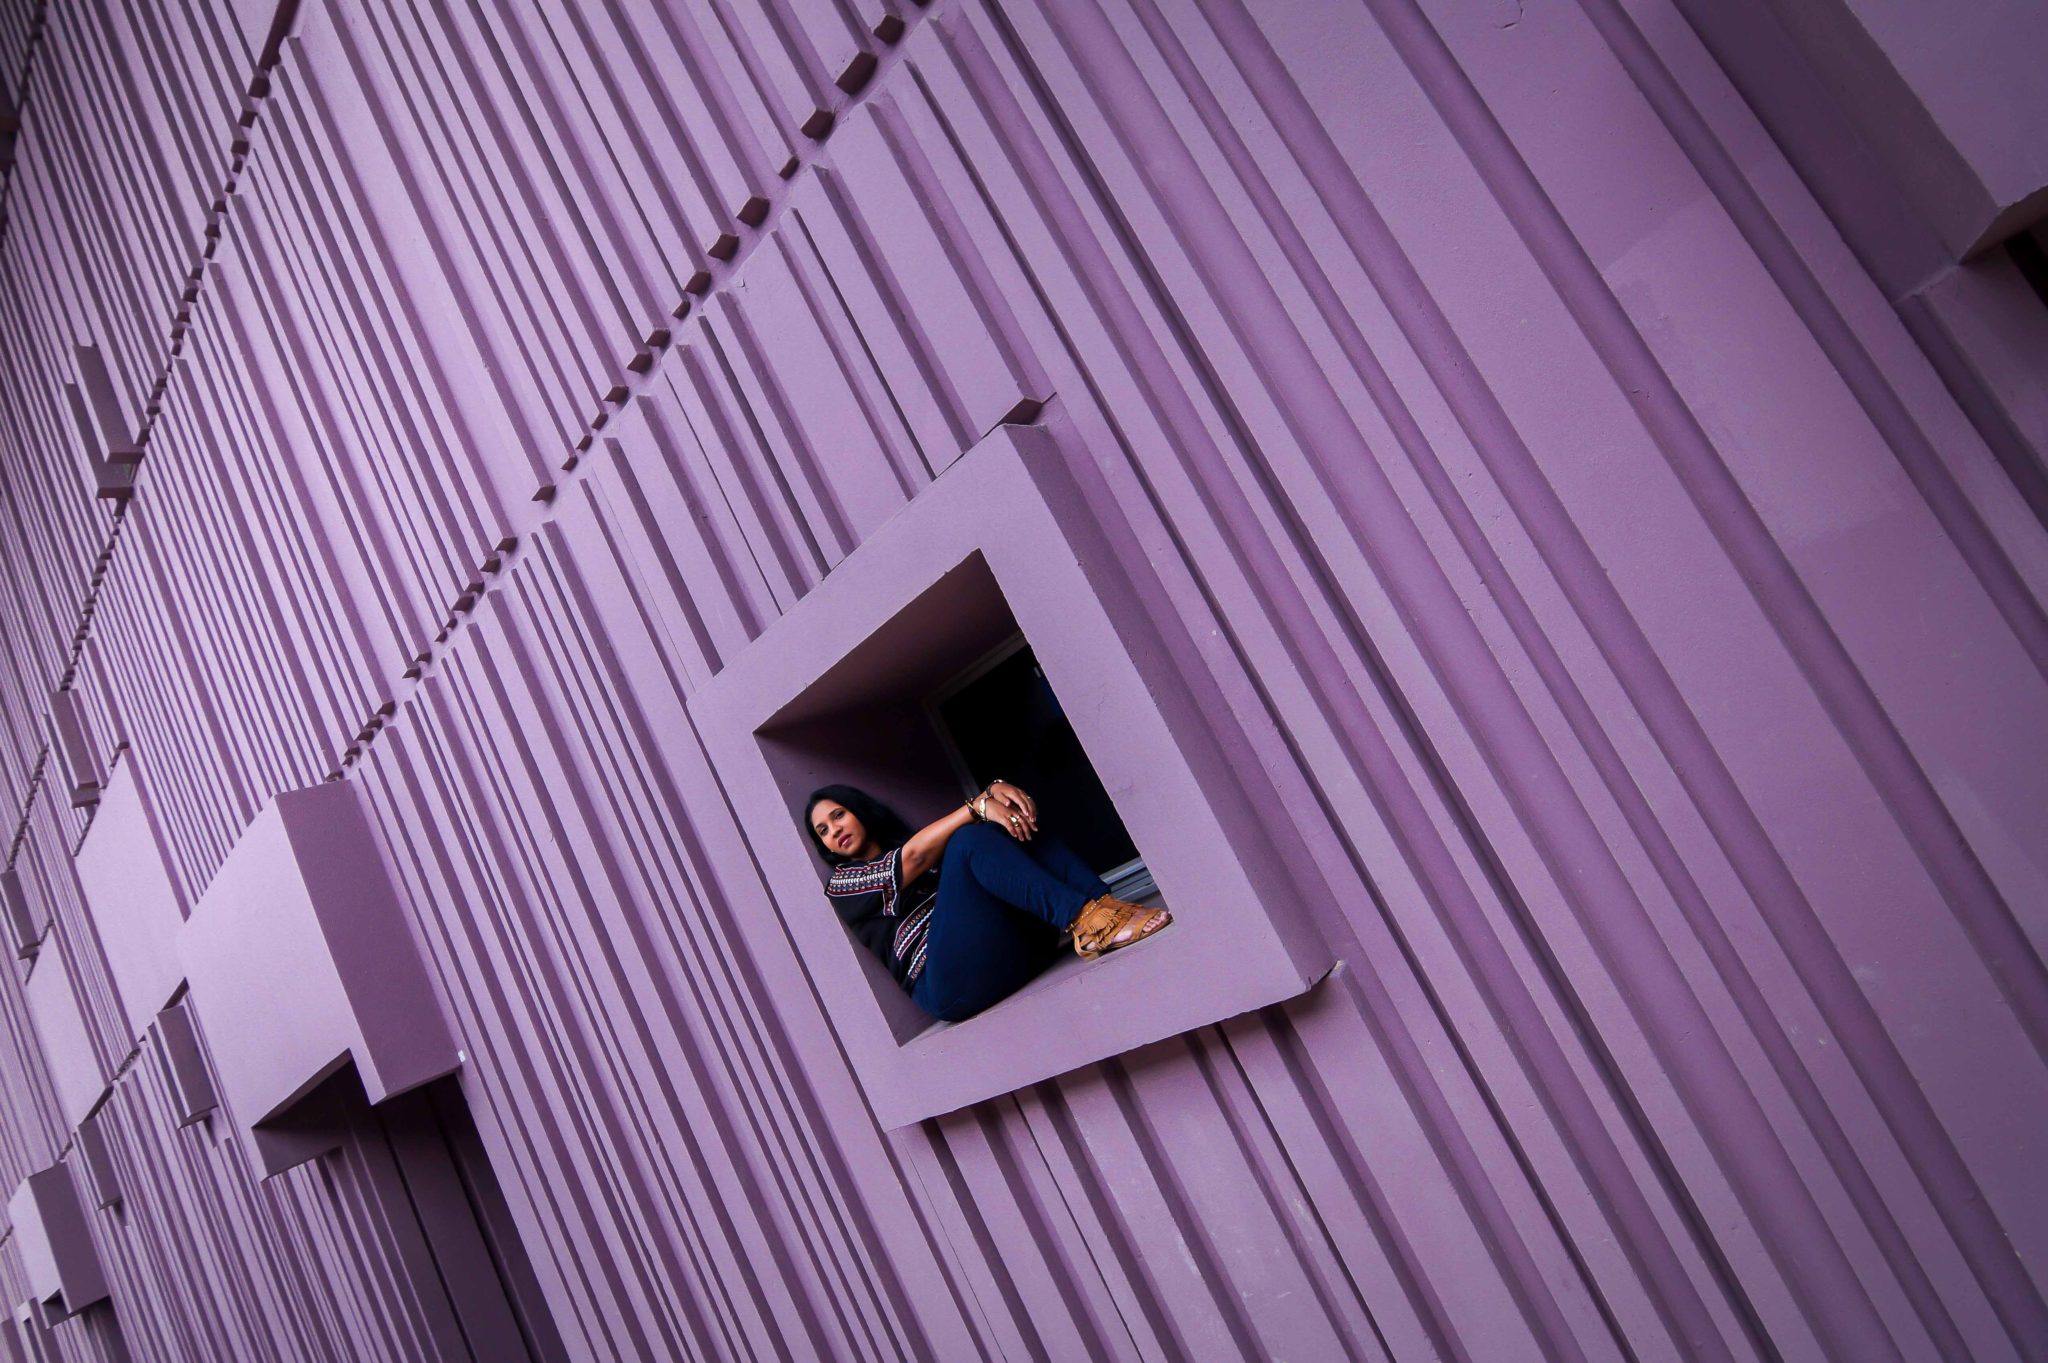 Le mur violet de Beaugrenelle comme lieu de shooting photo